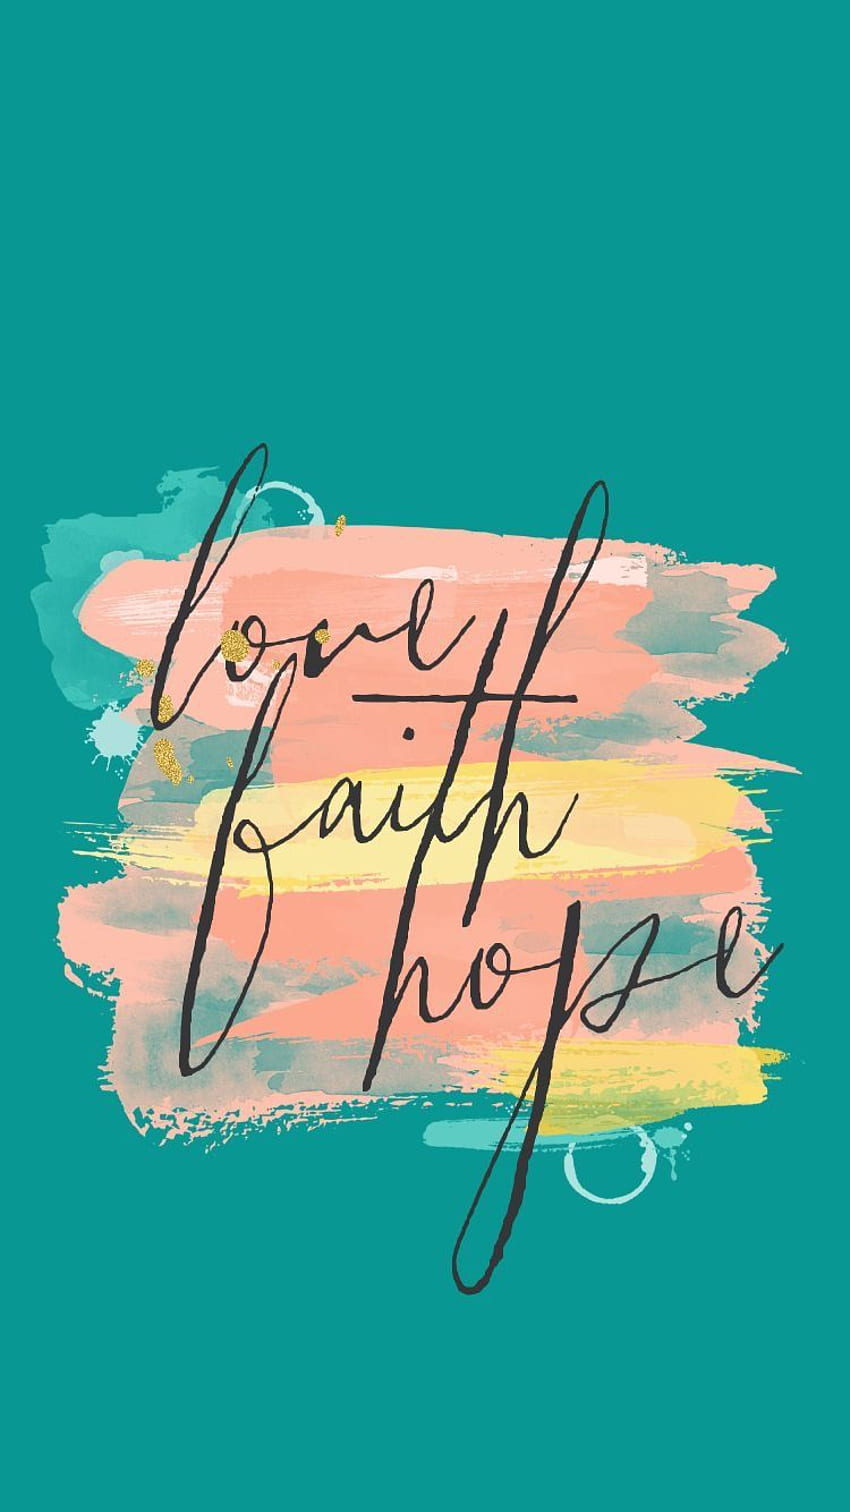 Phone , Faith Hope Love HD phone wallpaper